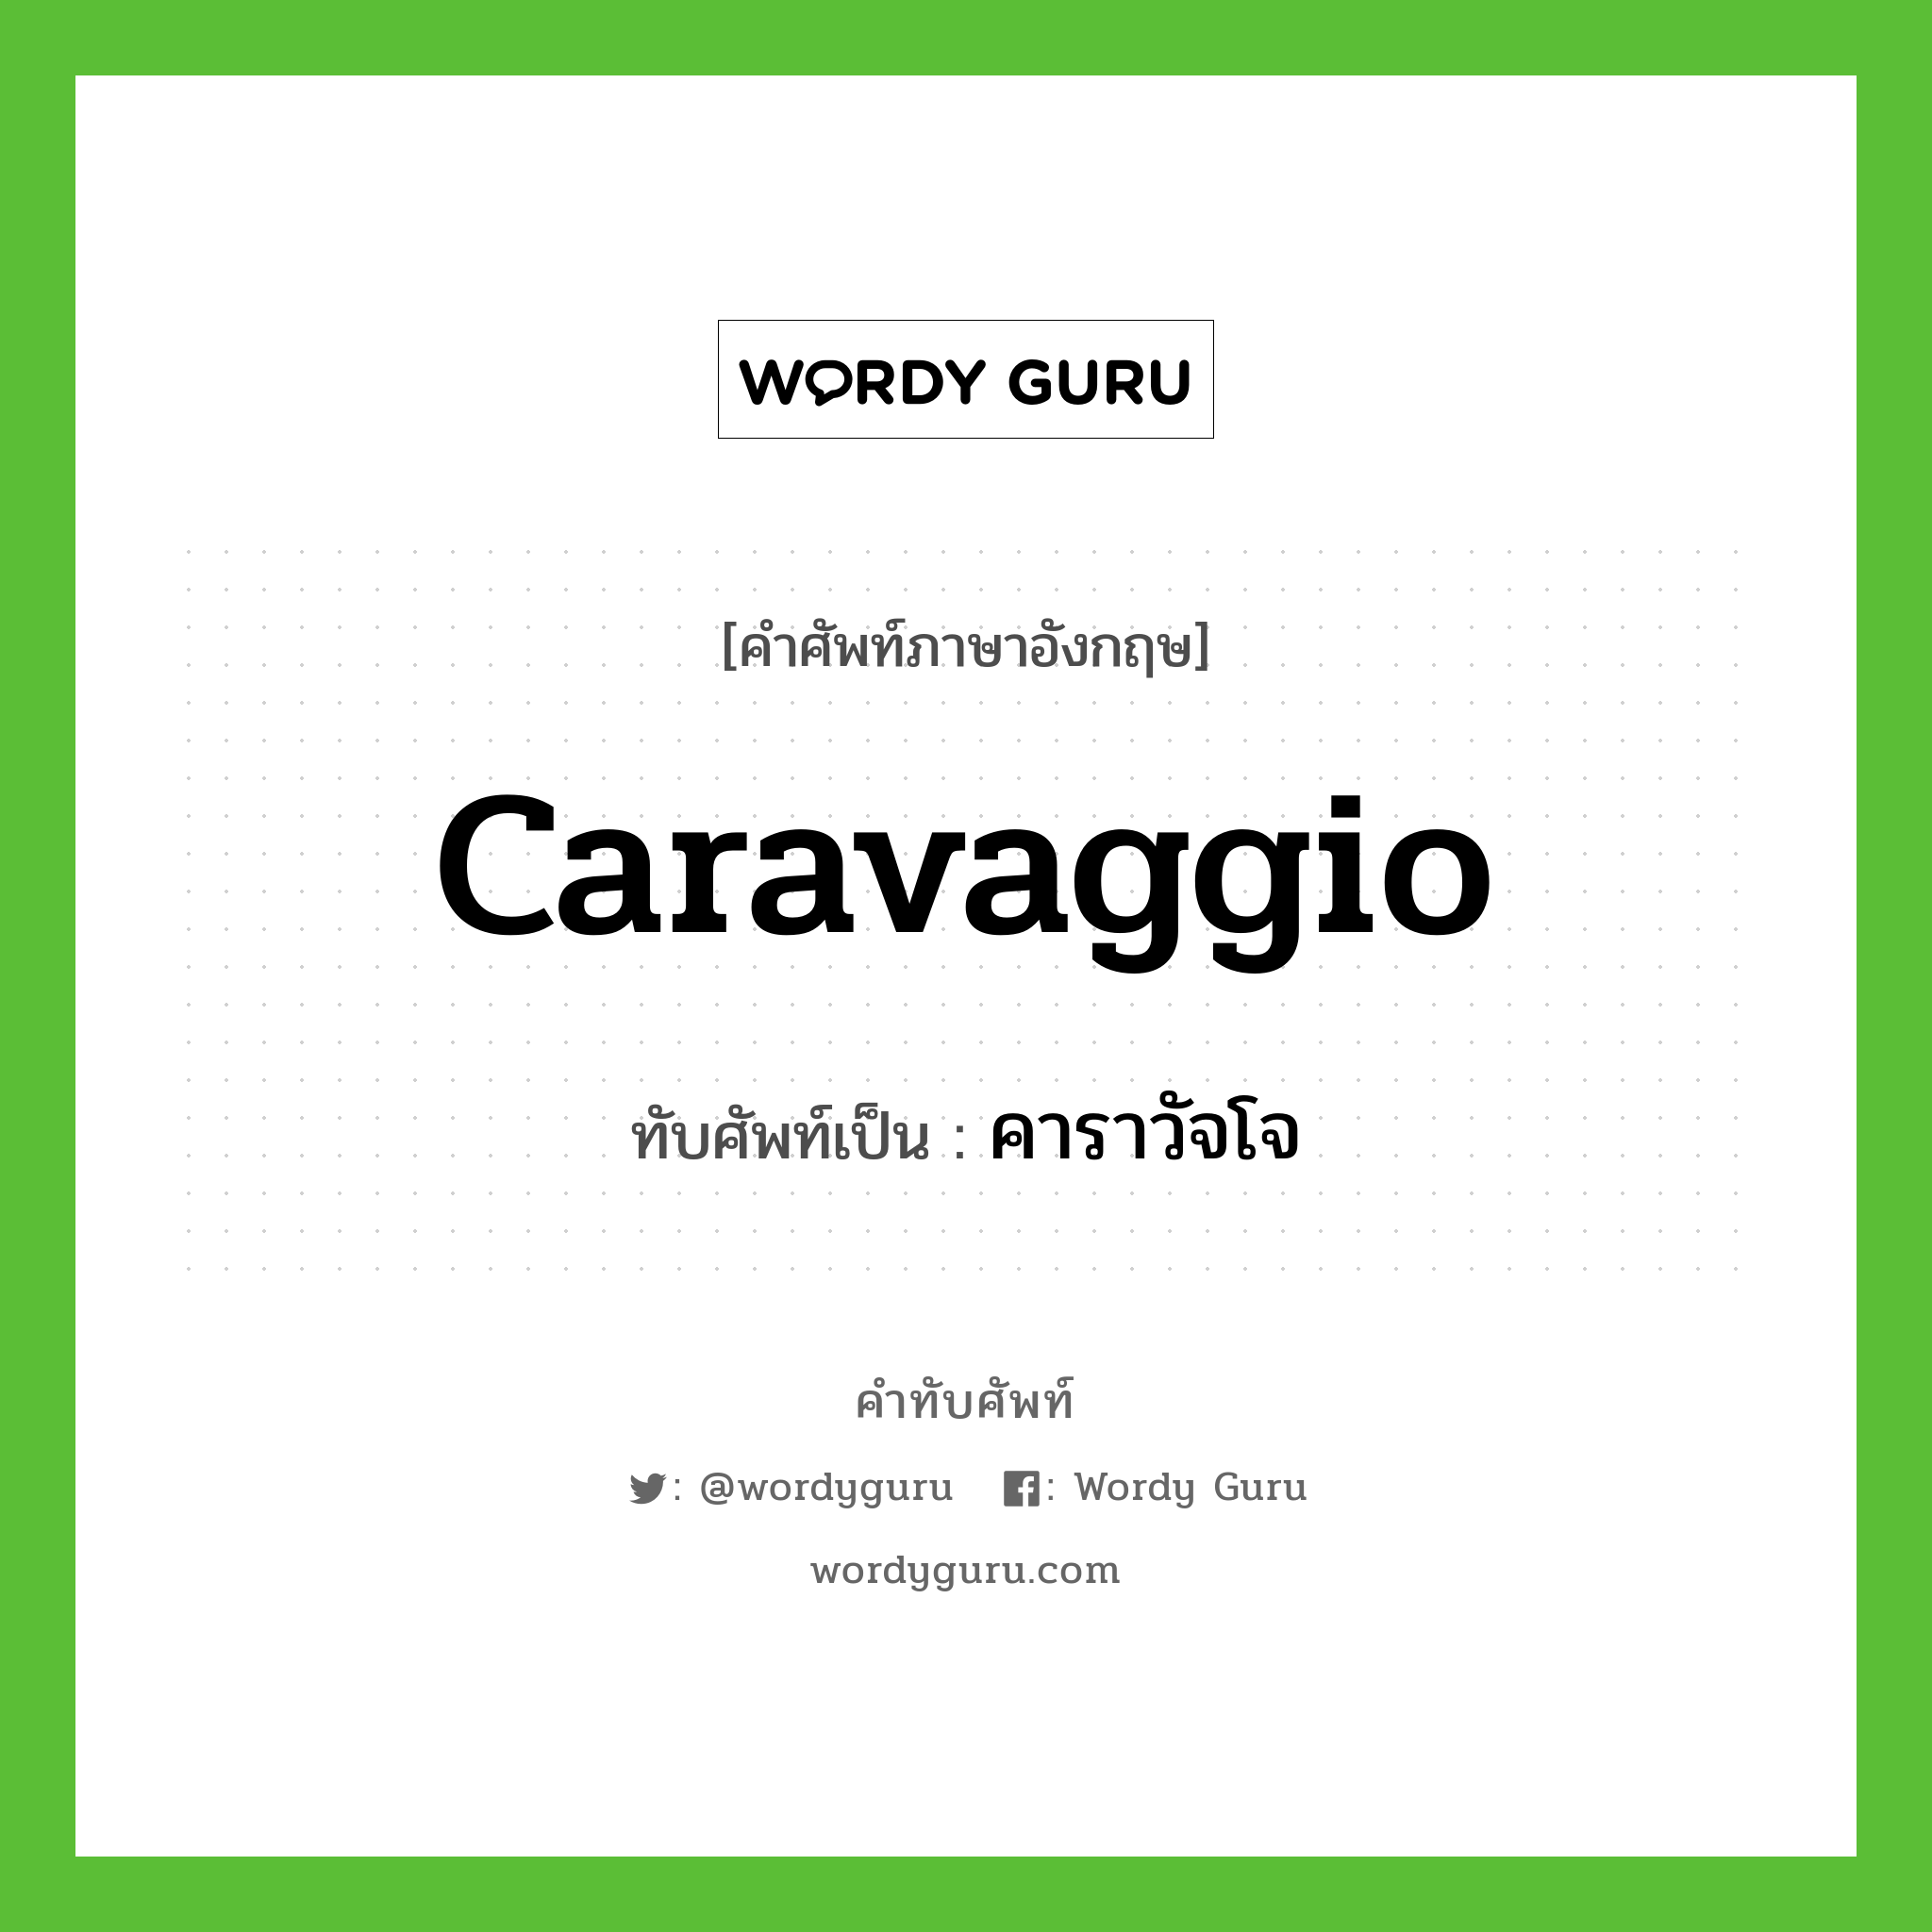 Caravaggio เขียนเป็นคำไทยว่าอะไร?, คำศัพท์ภาษาอังกฤษ Caravaggio ทับศัพท์เป็น คาราวัจโจ